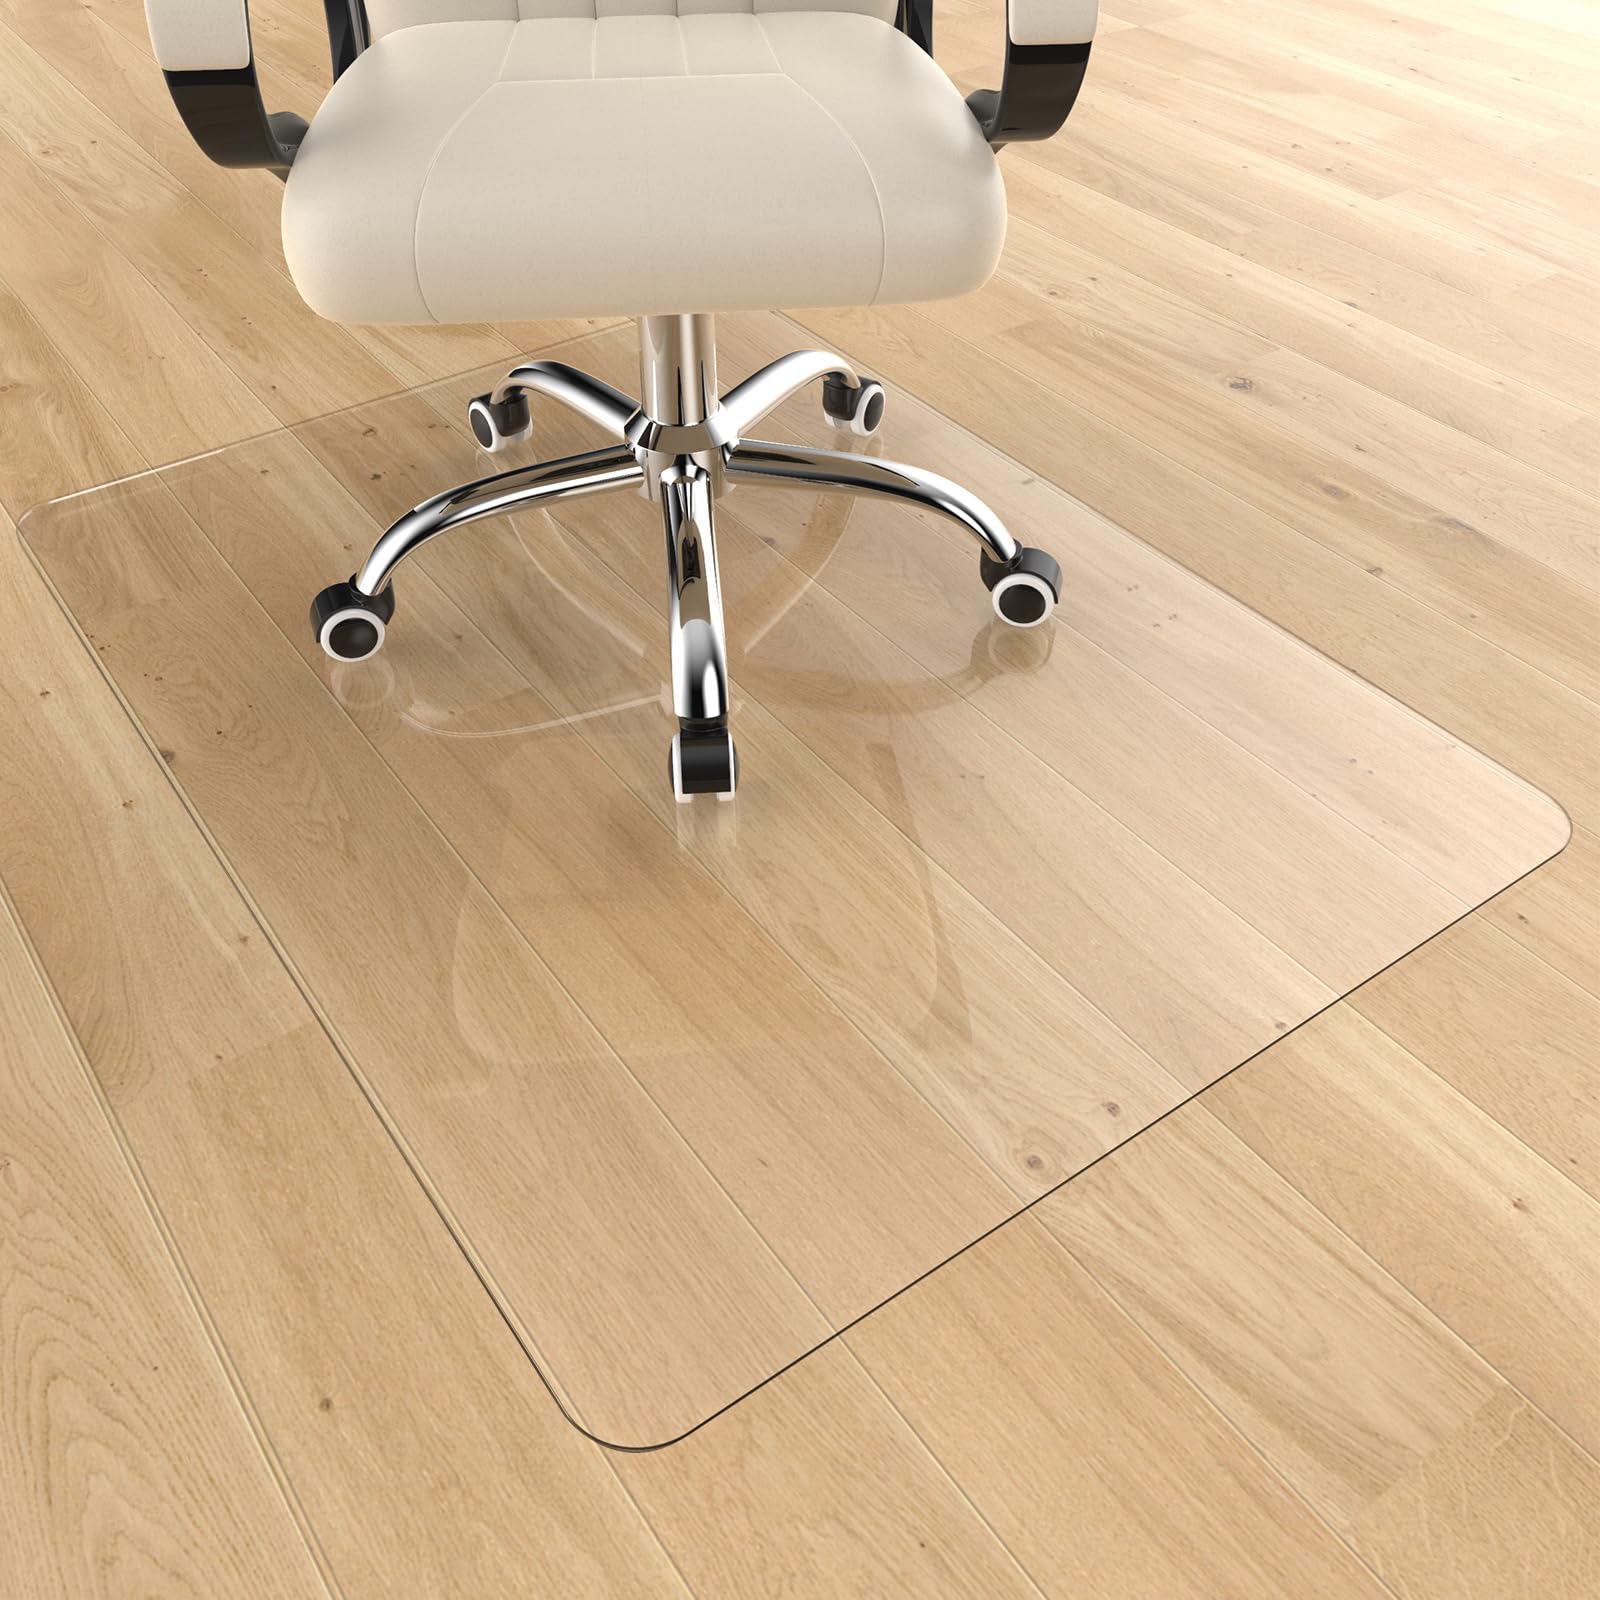 Heavy Duty Office Chair Mat for Carpet & Hardwood Floors, 48" x 36" Decorative Chair Mat Floor Mat, Desk Chair Mat for Carpeted Floors and Hardwood Floor for Home Office